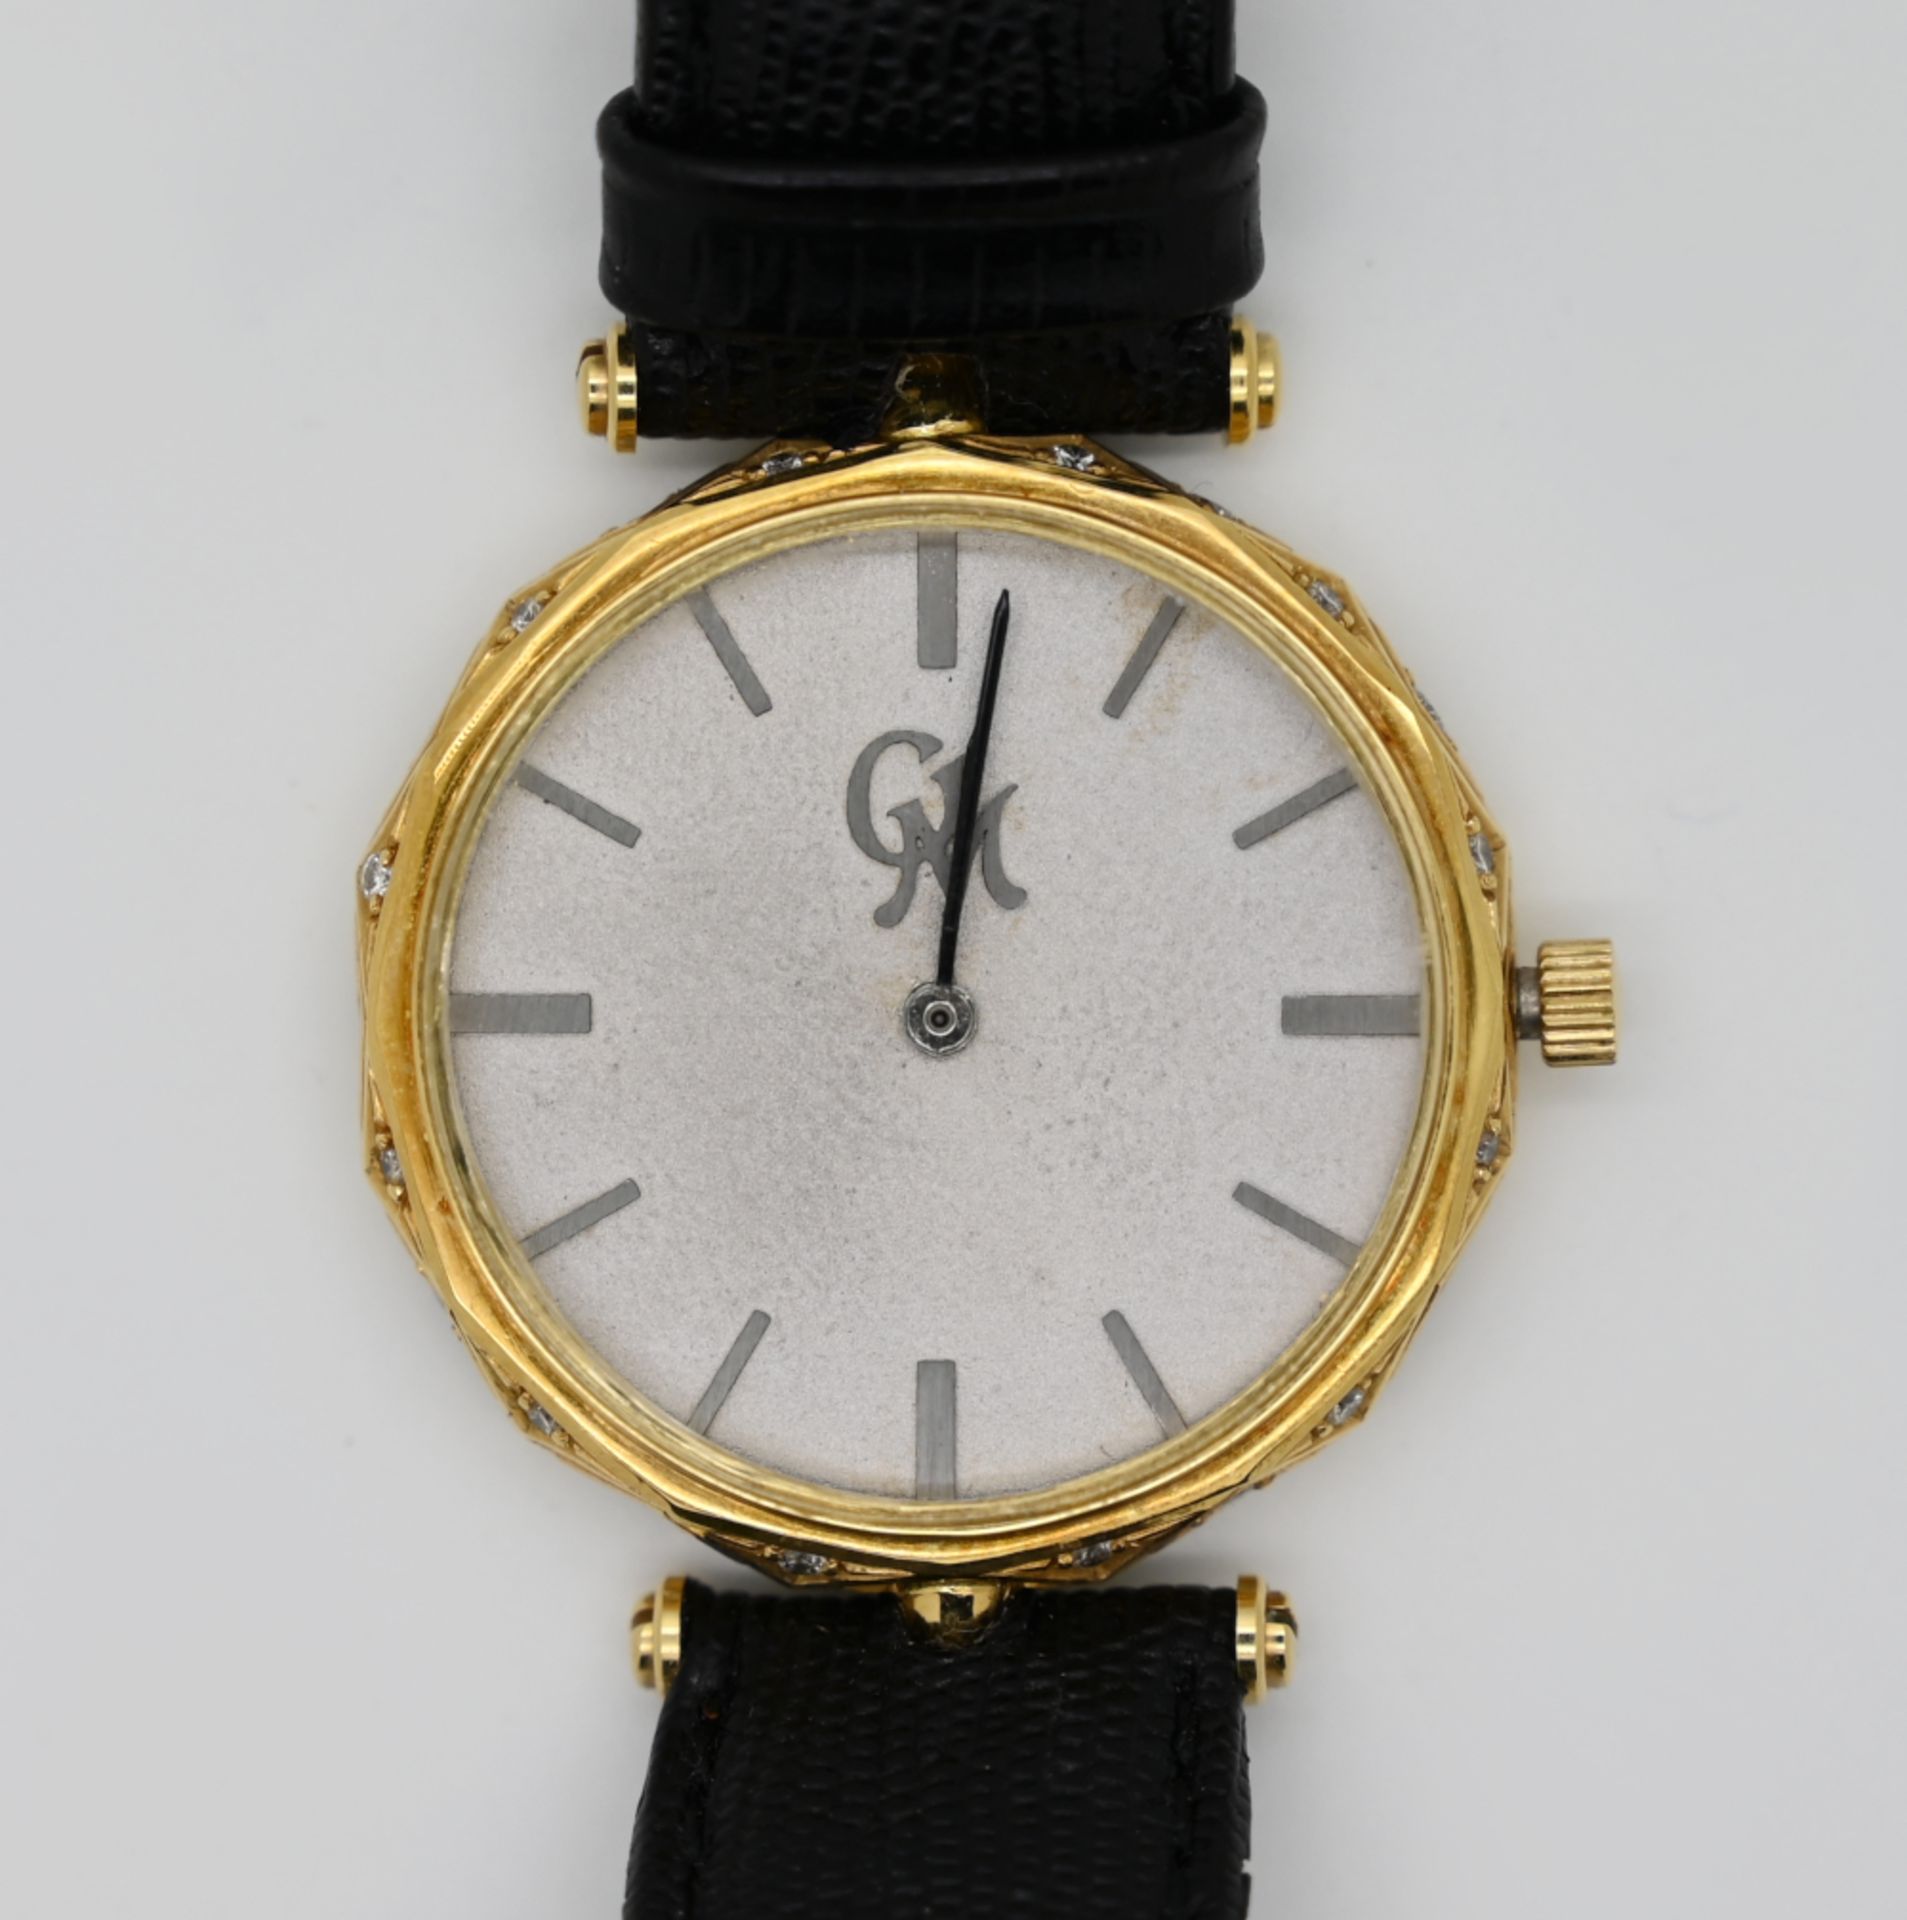 1 Armbanduhr GG 18ct., GM, mit kleinen Brillanten an der Seite, Durchmesser ca. 3,1cm, mit schwarzem